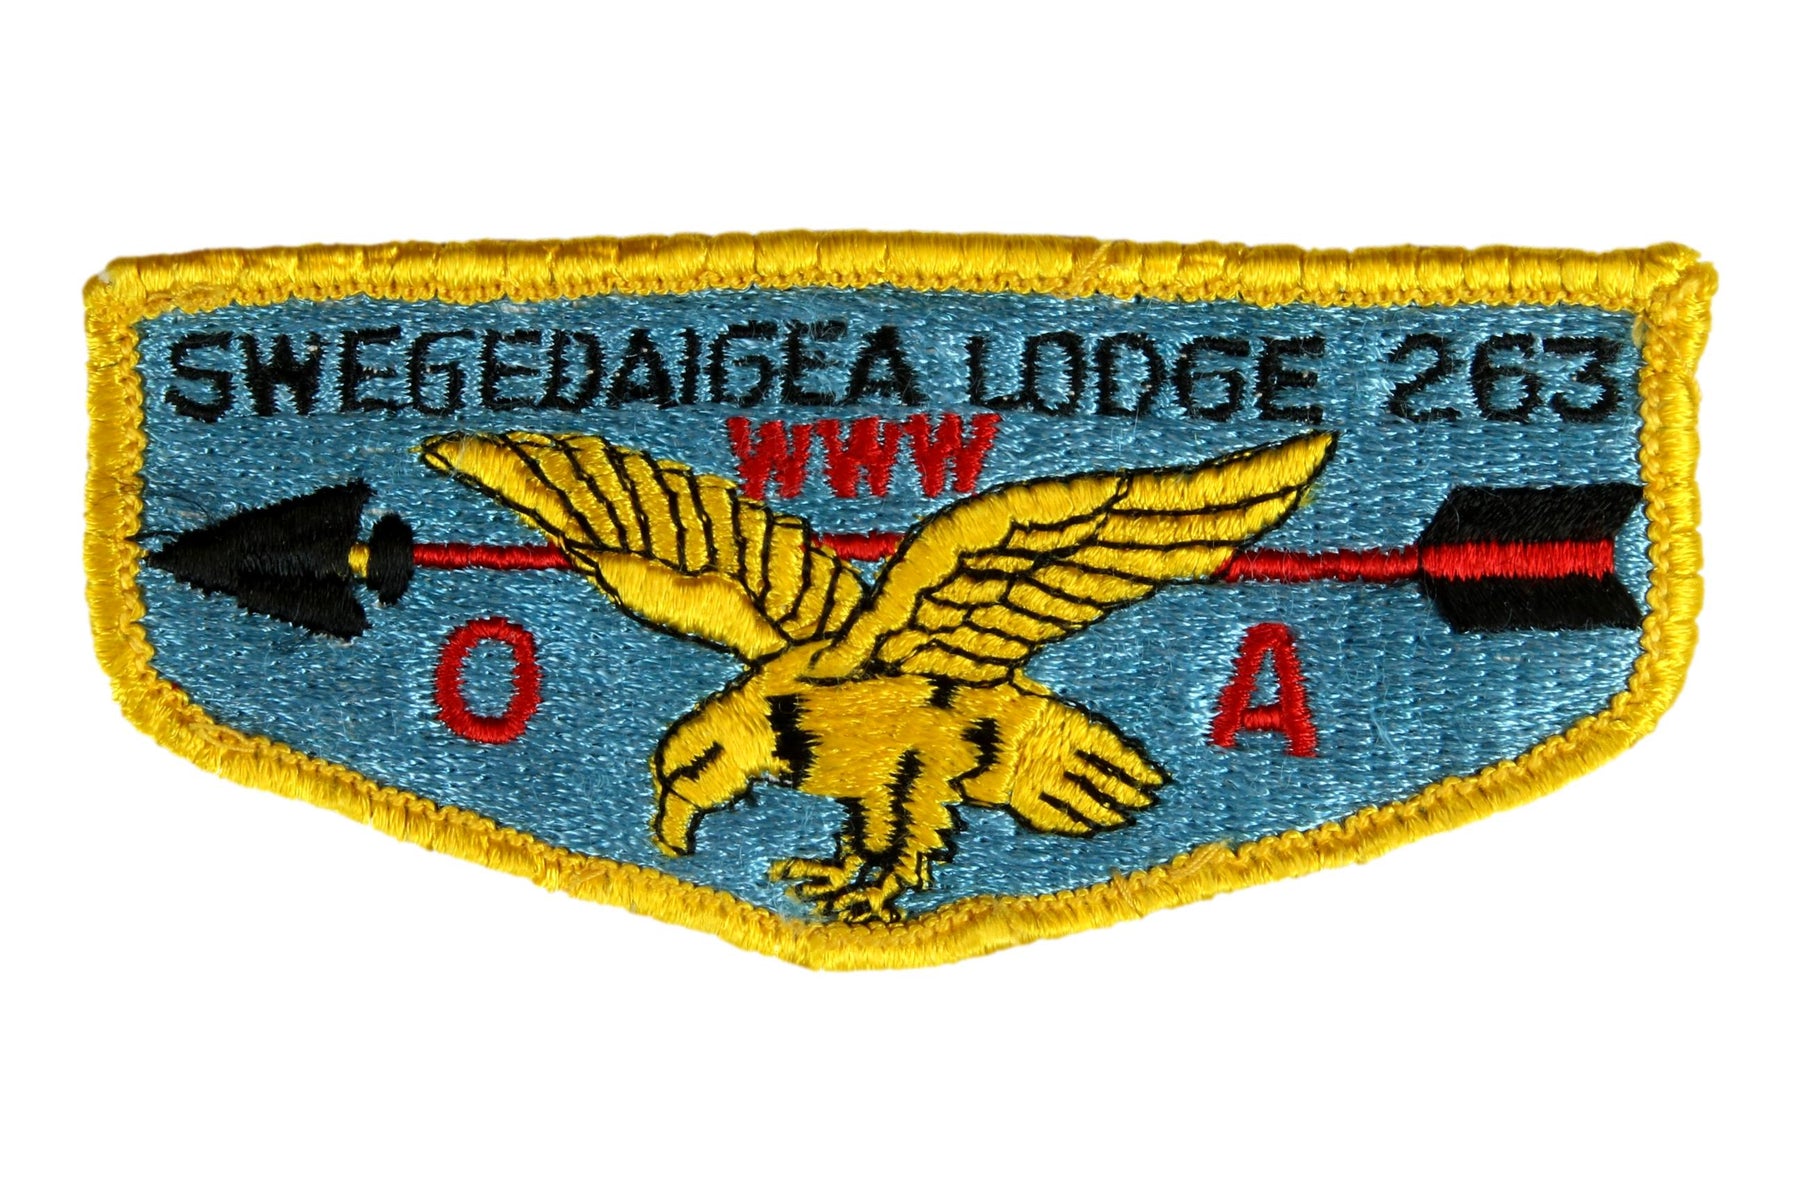 Lodge 263 Swegedaigea Flap S-2a